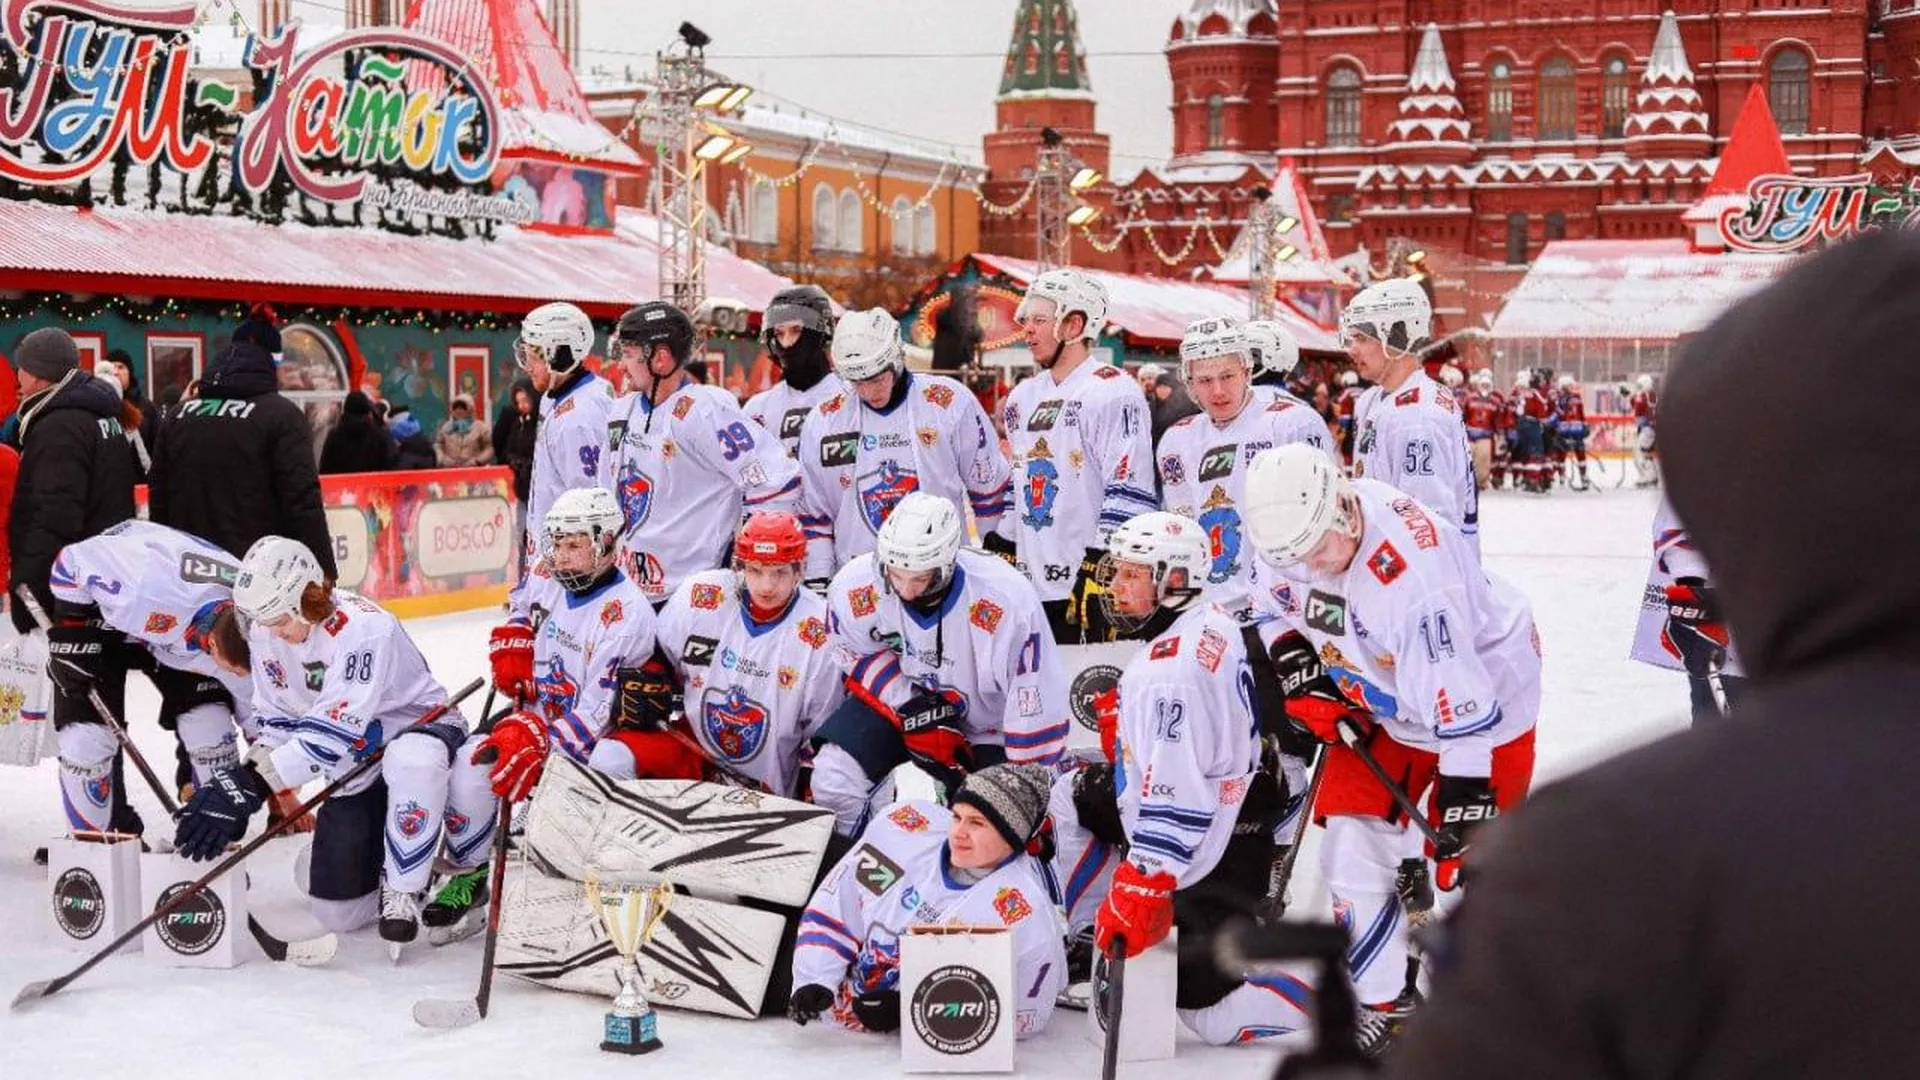 В «Шоу-матче на Красной площади»  участвовали звезды хоккея, шоу-бизнеса и студенты из Красногорска